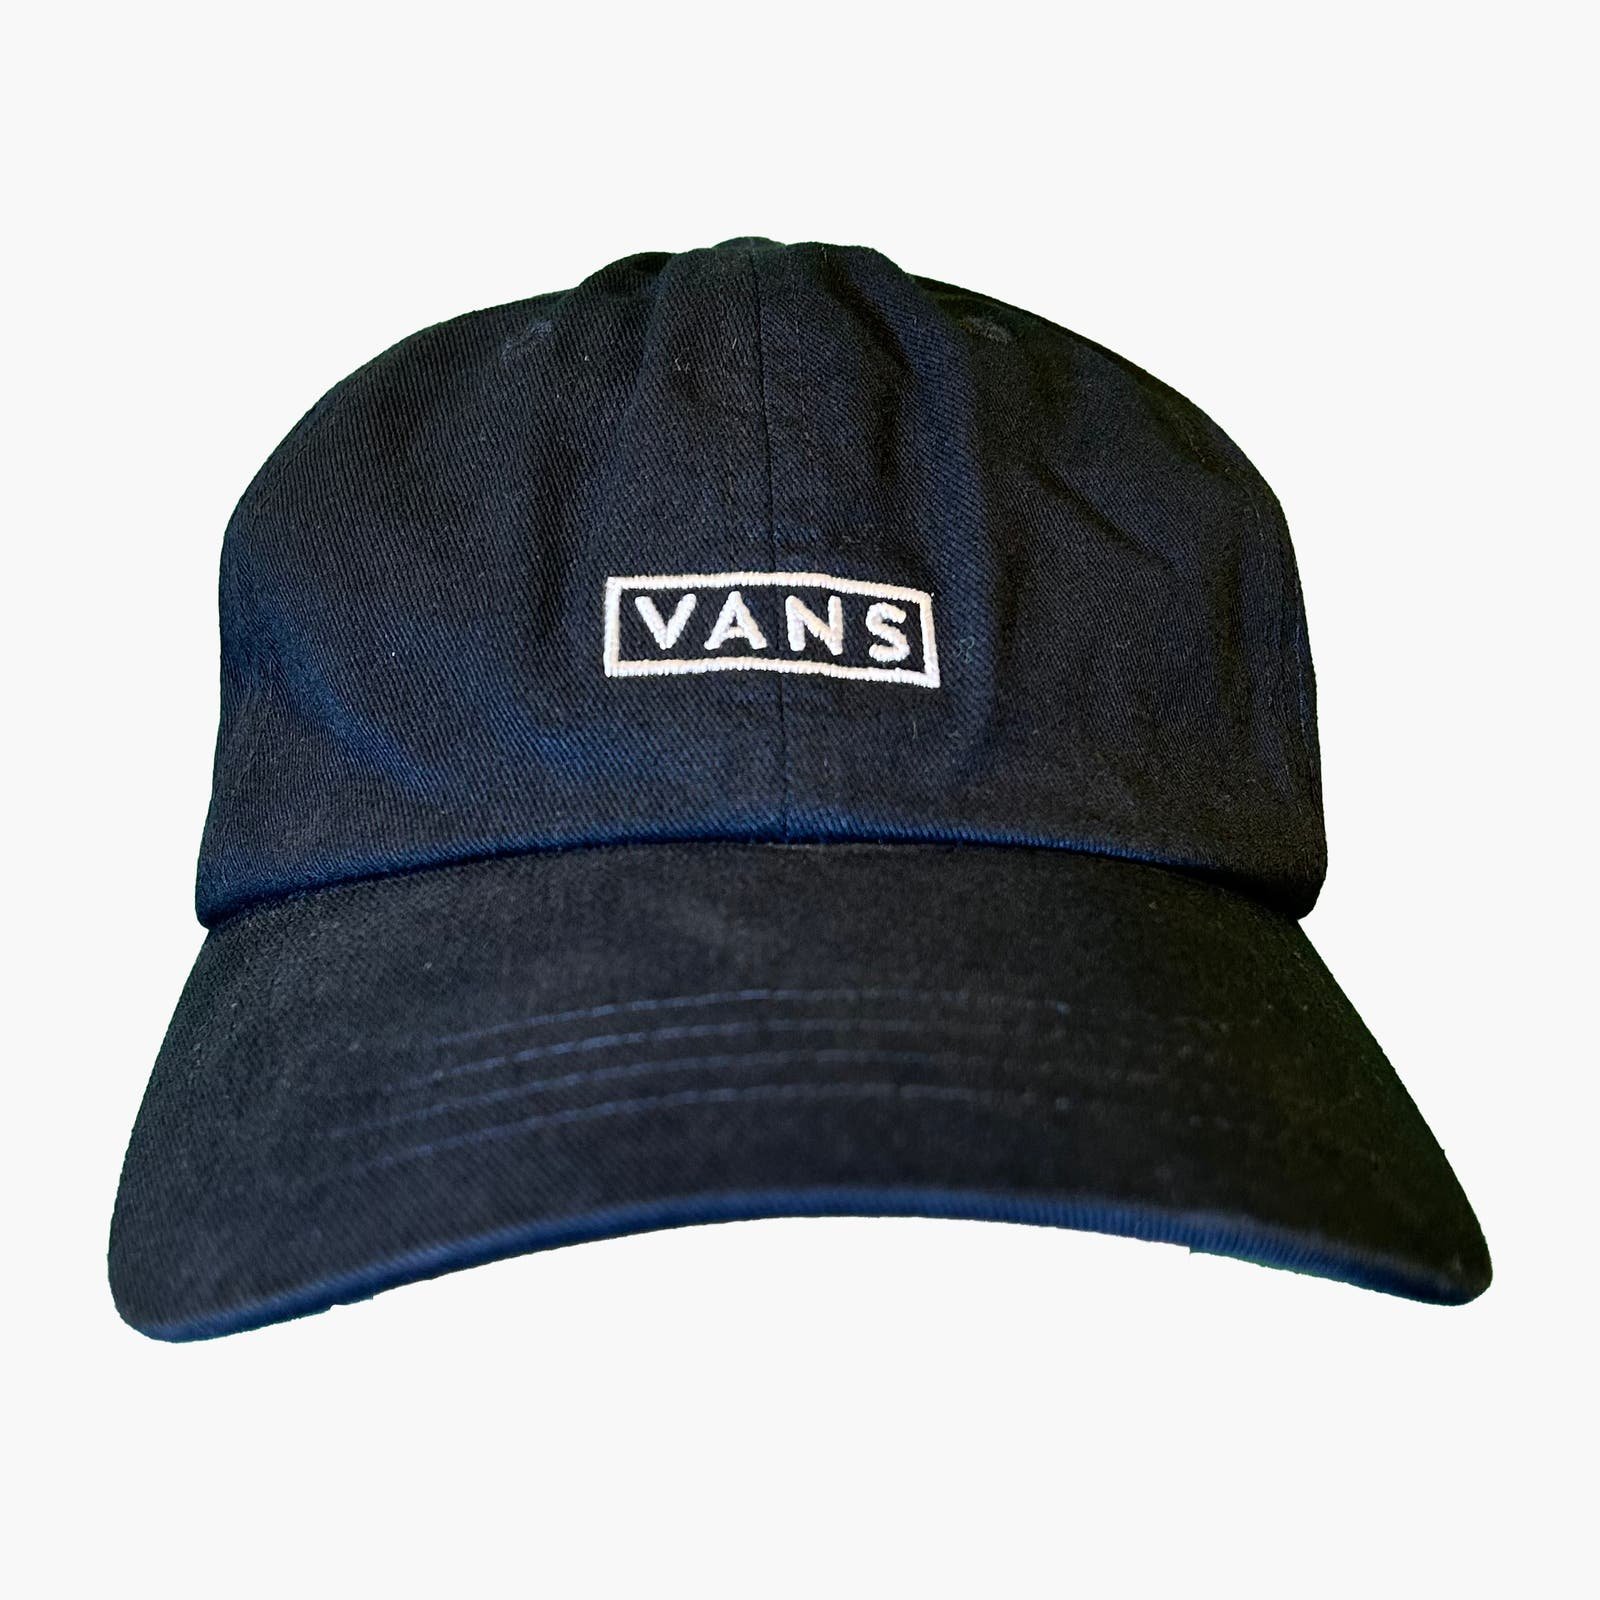 VANS Small Logo Adjustable Hat (Black | OS) fZGsRbJjo